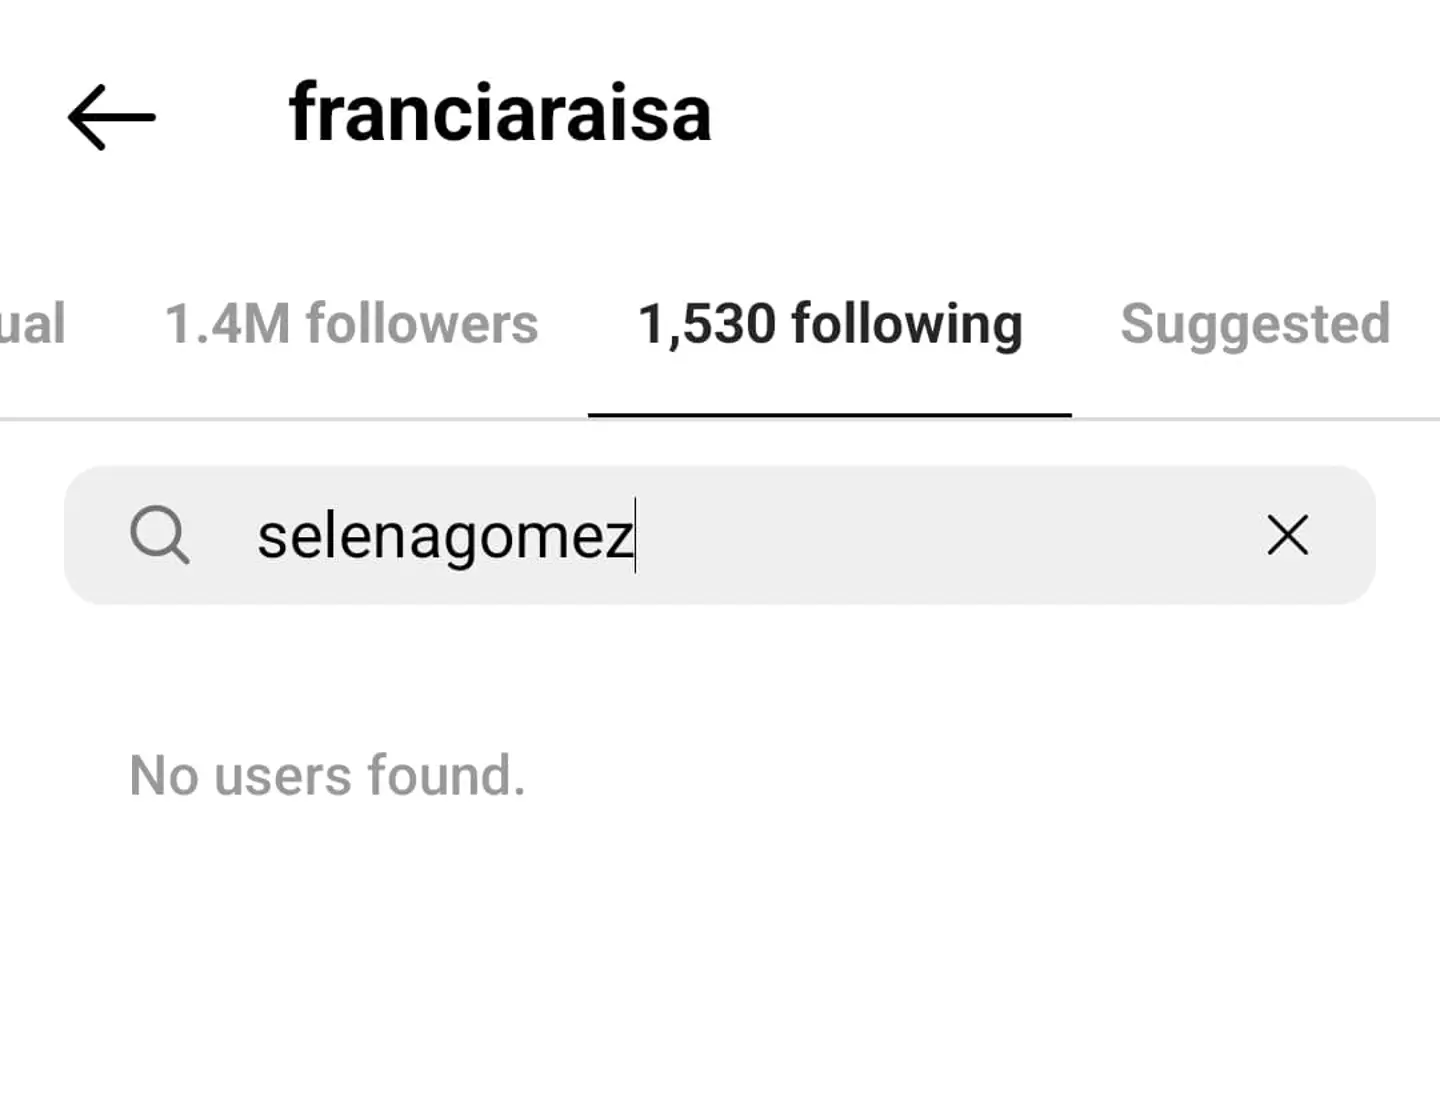 Raisa is no longer following Gomez on Instagram.